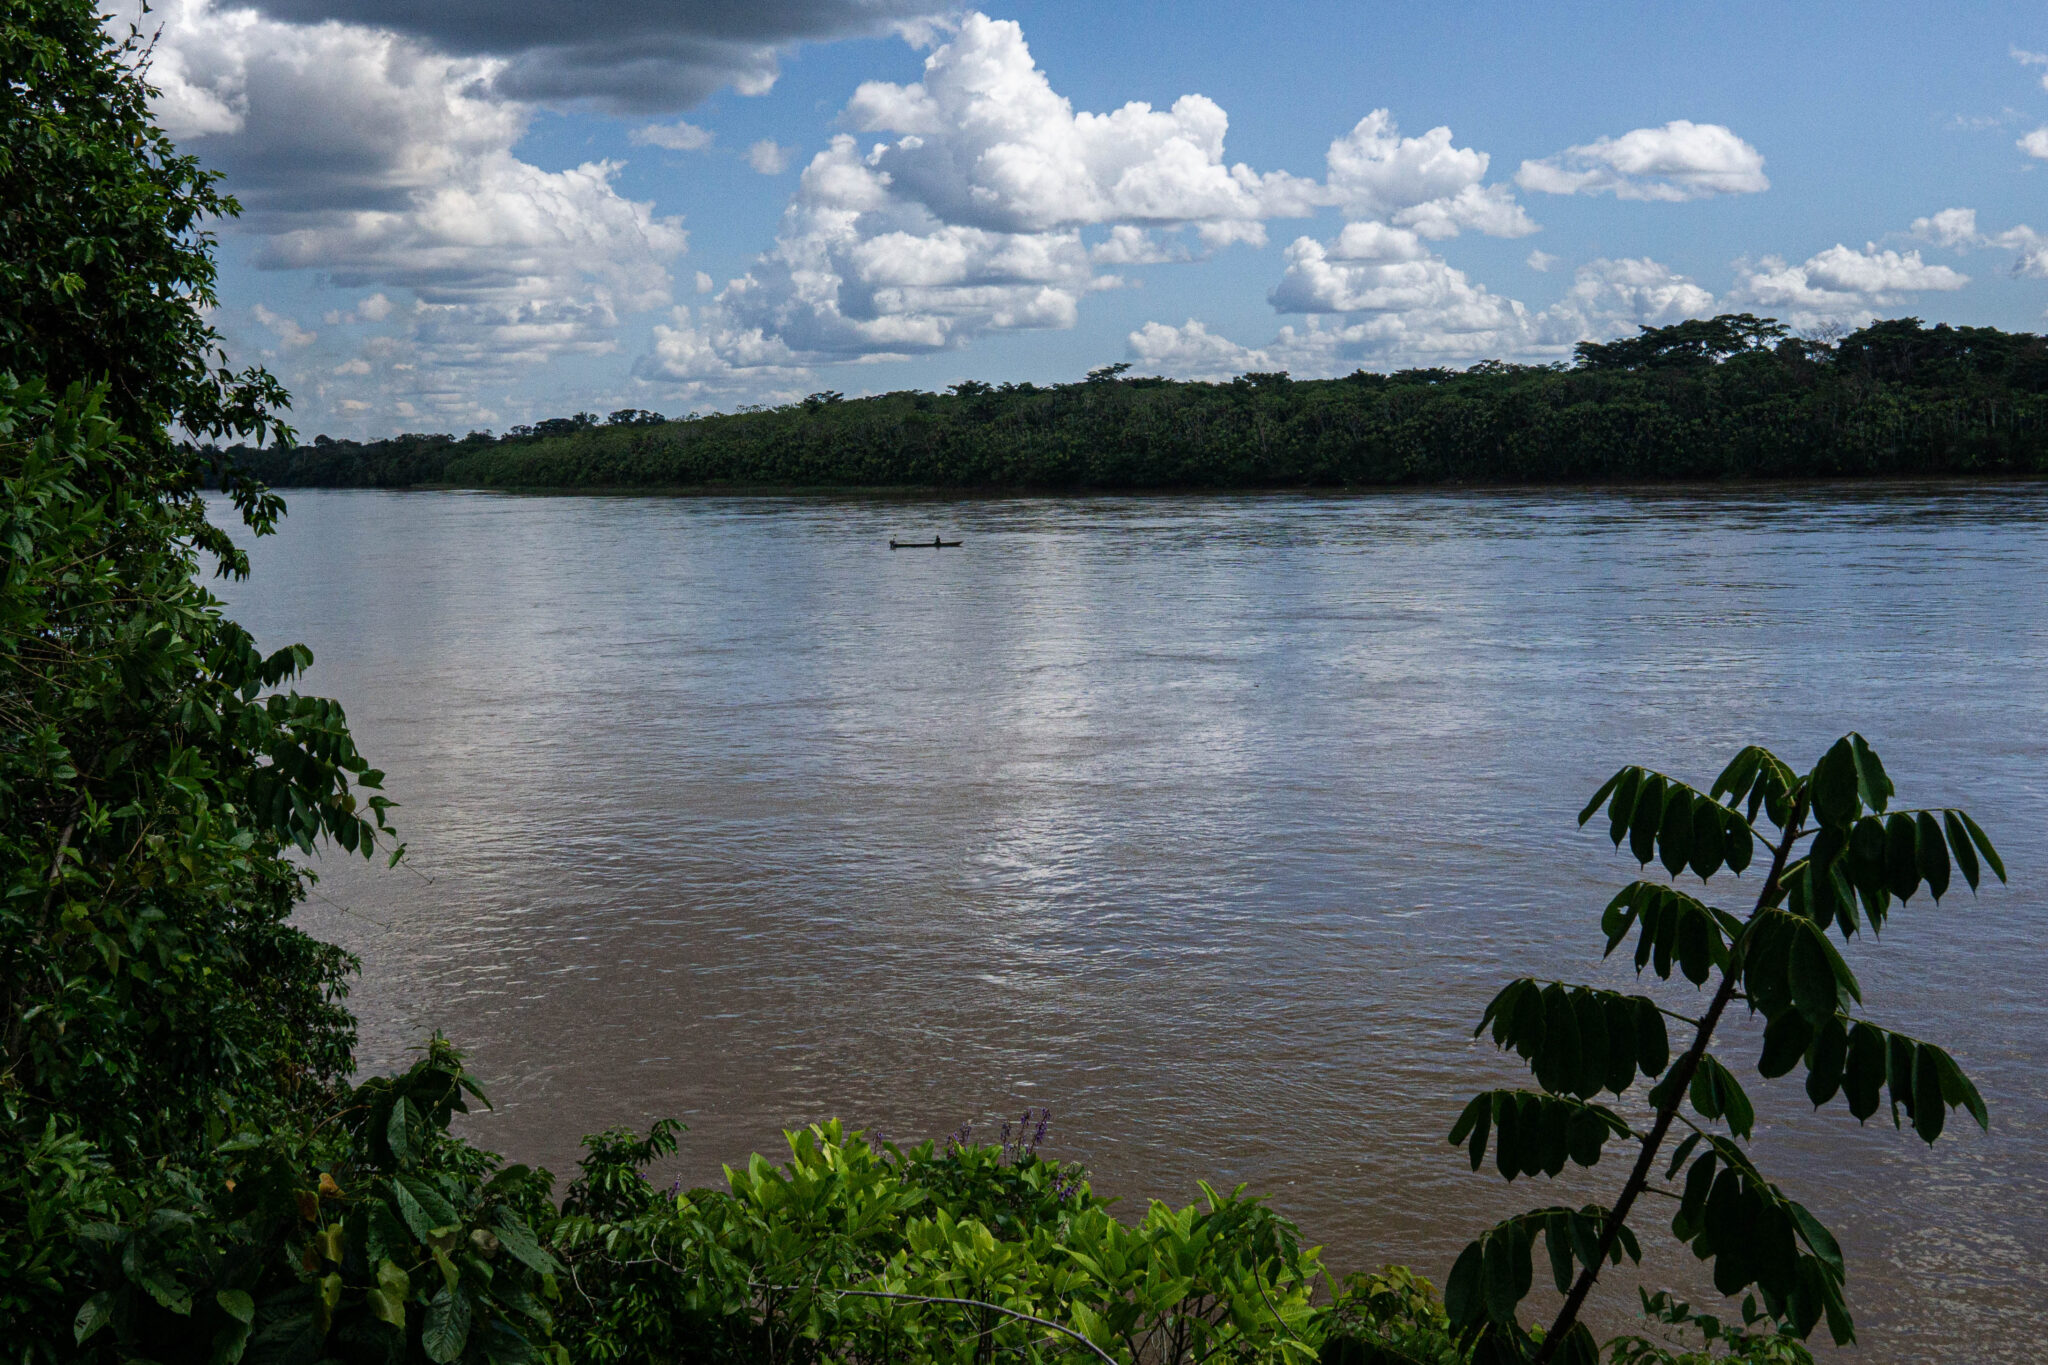 El río Putumayo es el límite natural entre Colombia y Perú en la Amazonia. A ambos lados de la frontera operan grupos armados colombianos y hay cultivos de coca. Crédito: Bram Ebus.